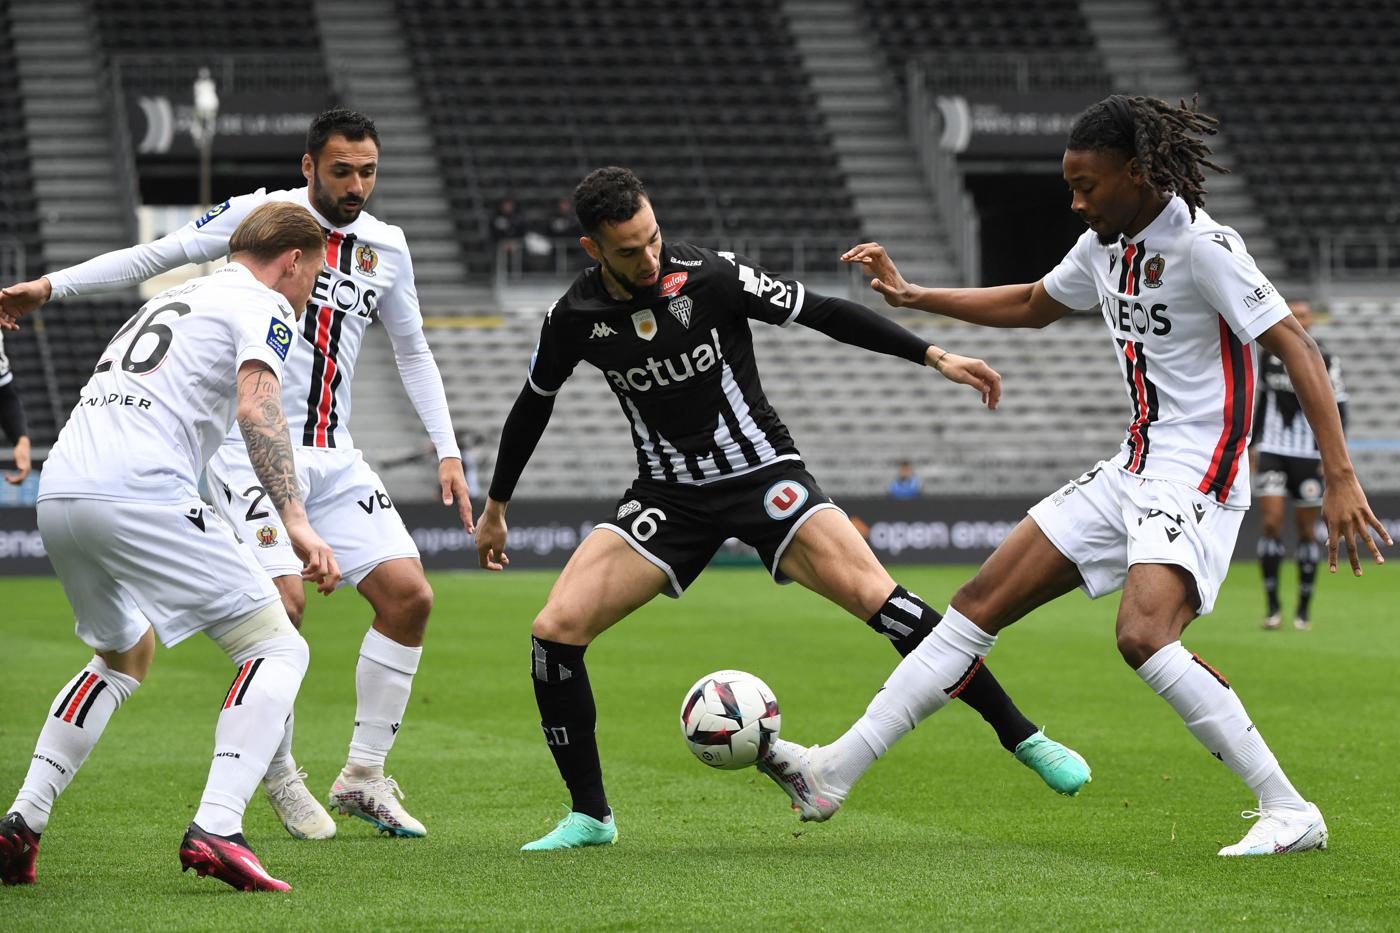 Angers - Nicea - 1:1. Mistrzostwa Francji, 29. runda. Przegląd meczu, statystyki